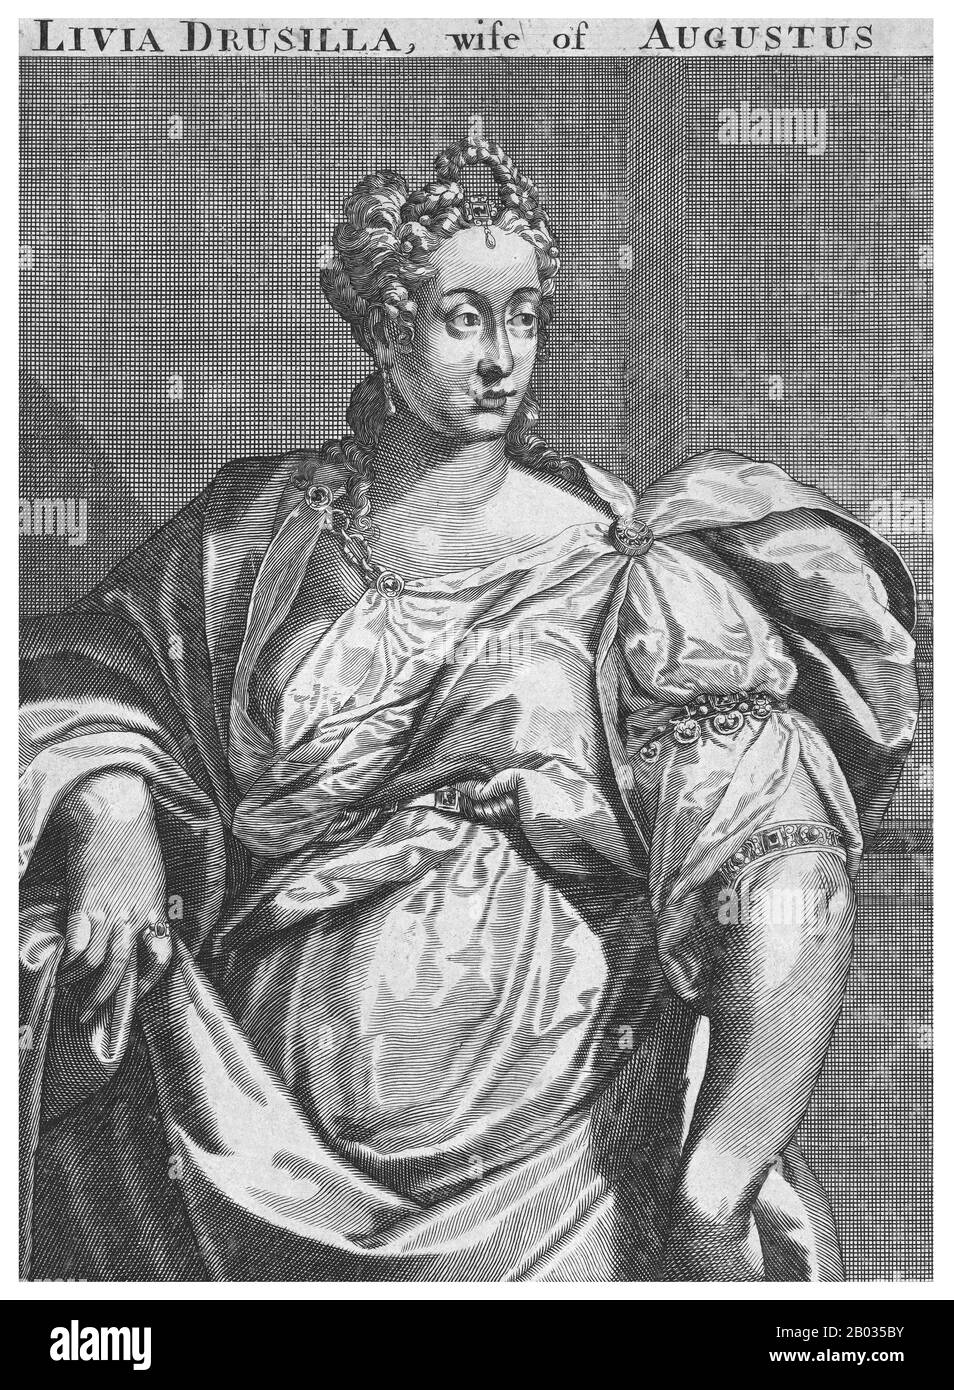 Livia Drusilla (58 v. Chr. - 29 u. z.), später aber als Julia Drusilla bekannt, war Livia nach ihrer Aufnahme in die Familie Julian im Jahr 14 u. z. während seiner gesamten Regierungszeit als Kaiser Kaiser Kaiser Kaiser Augusts dritte Ehefrau und dessen Ehepartner. Sie erhielt den Ehrentitel Augusta. Die Mutter von Tiberius, Großmutter väterlicherseits bei Claudius, Urgroßmutter von Caligula väterlicherseits und Ururgroßmutter mütterlicherseits von Nero, wurde nach ihrem Tod von Claudius vergöttlicht. Sie war ihr Leben lang für ihren Einfluss und ihre Fähigkeit als privilegierter Berater und Ratgeber für Augustus und Tiberius später im Leben bekannt, an Stockfoto